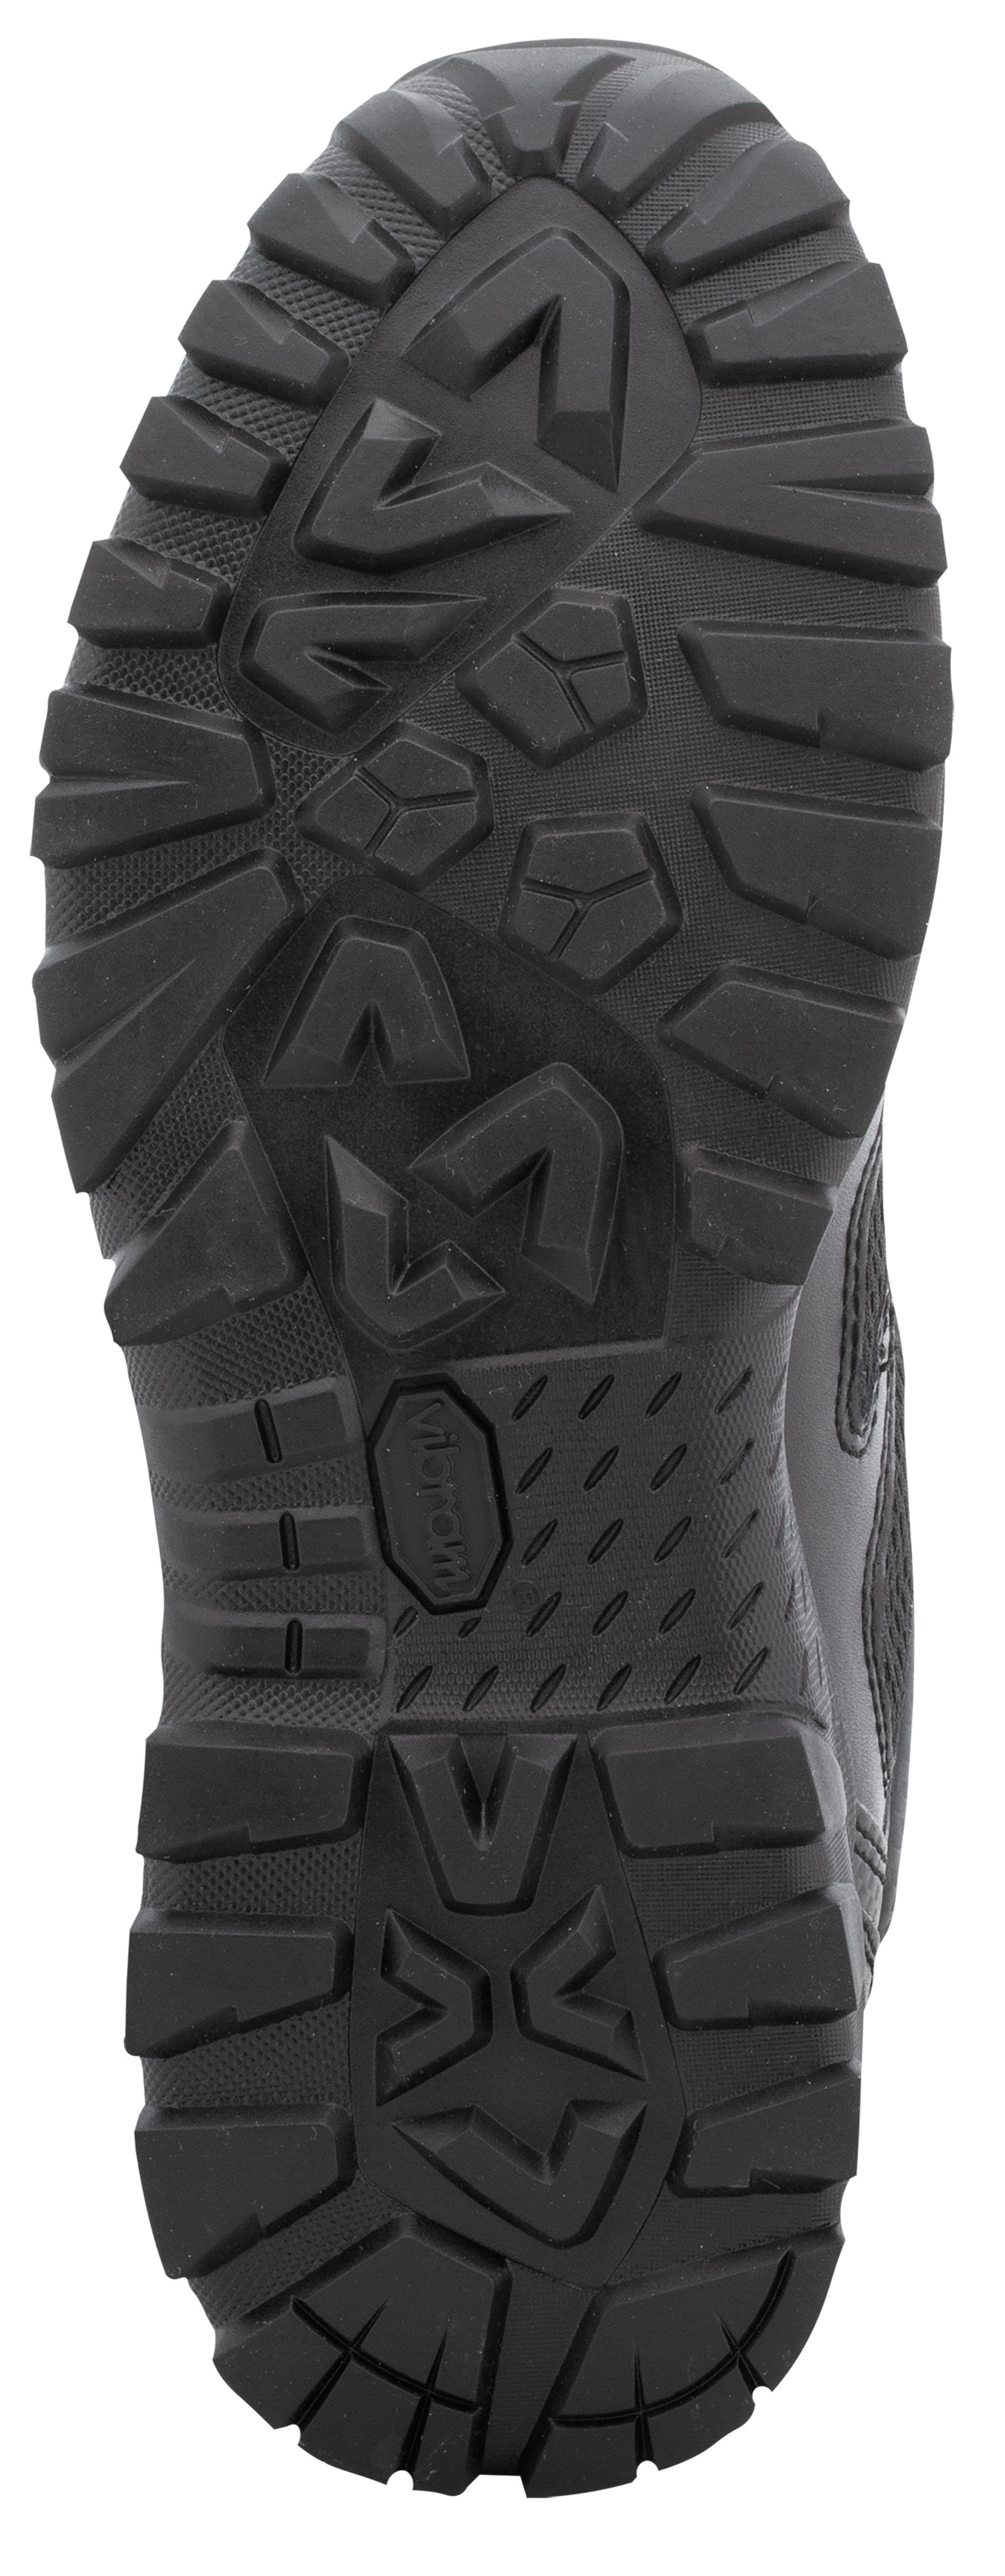 Einsatzstiefel MAGNUM Elite Spider X 8.0 schwarz Stiefel Schuhe Armee Outdoor 